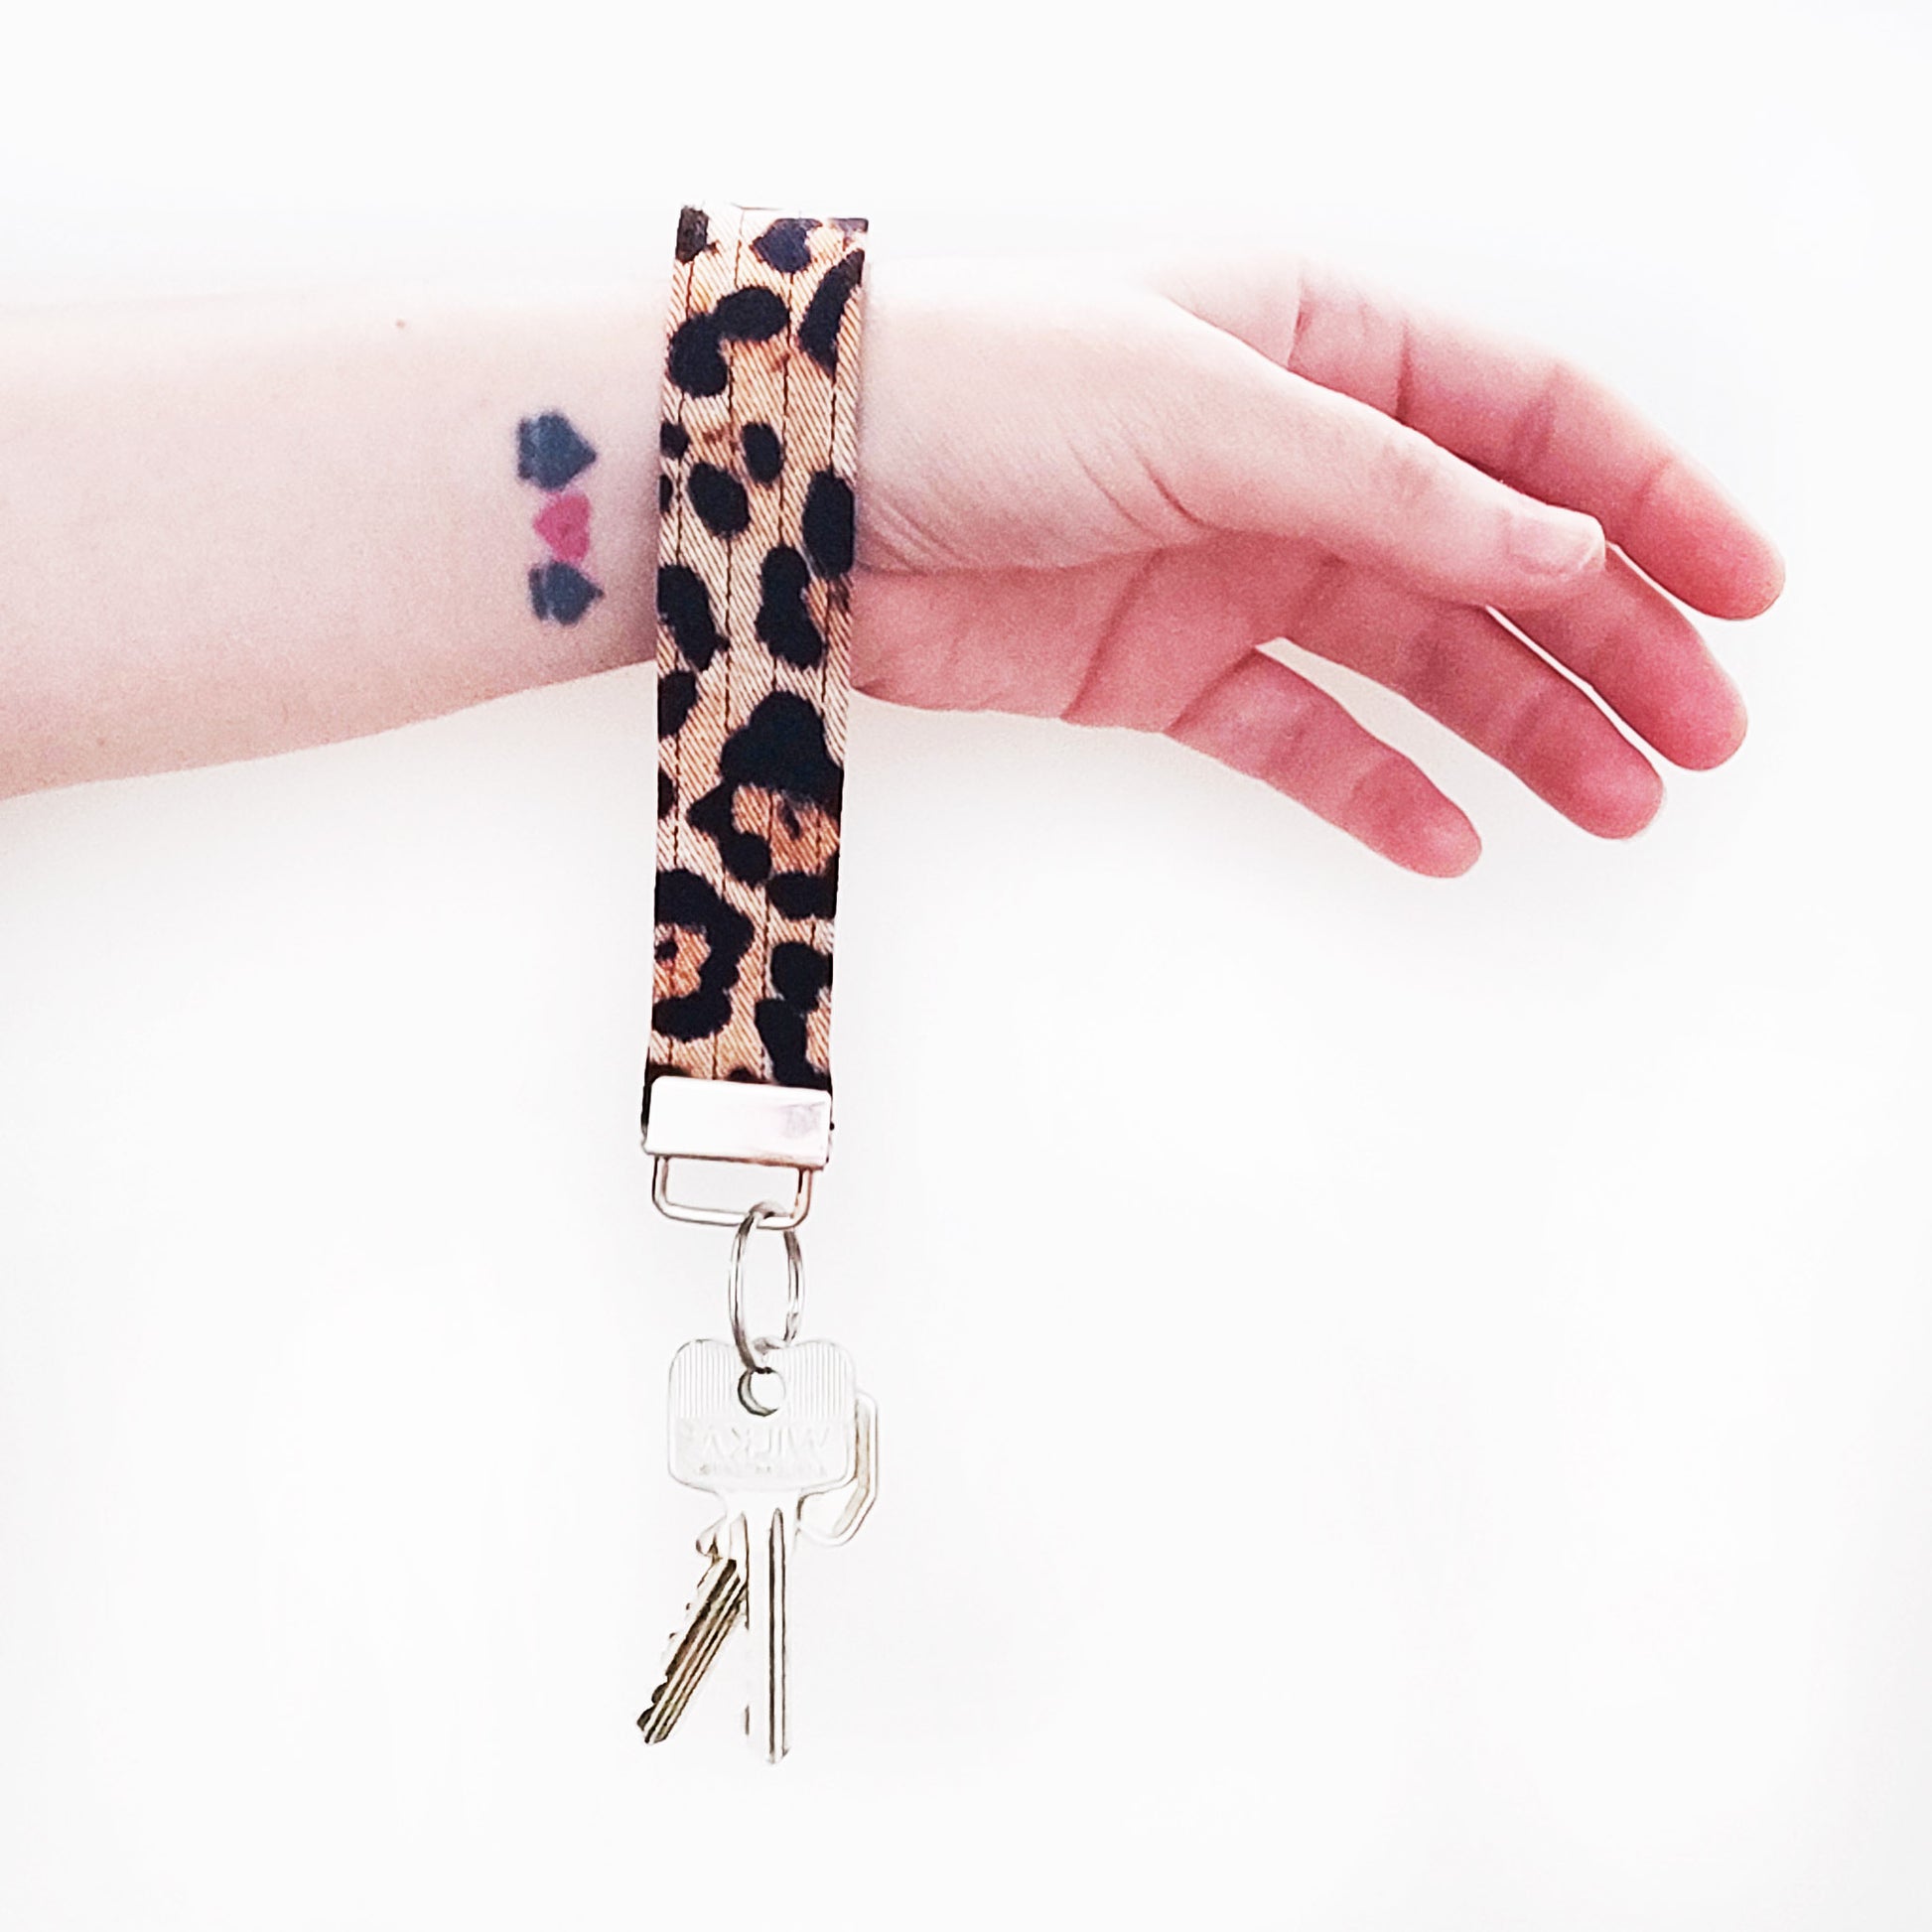 Handgemachter Schlüsselanhänger in Leoparden Muster. Dieser praktische Anhänger kann bequem um das Handgelenk getragen werden, sodass er jederzeit griffbereit ist.